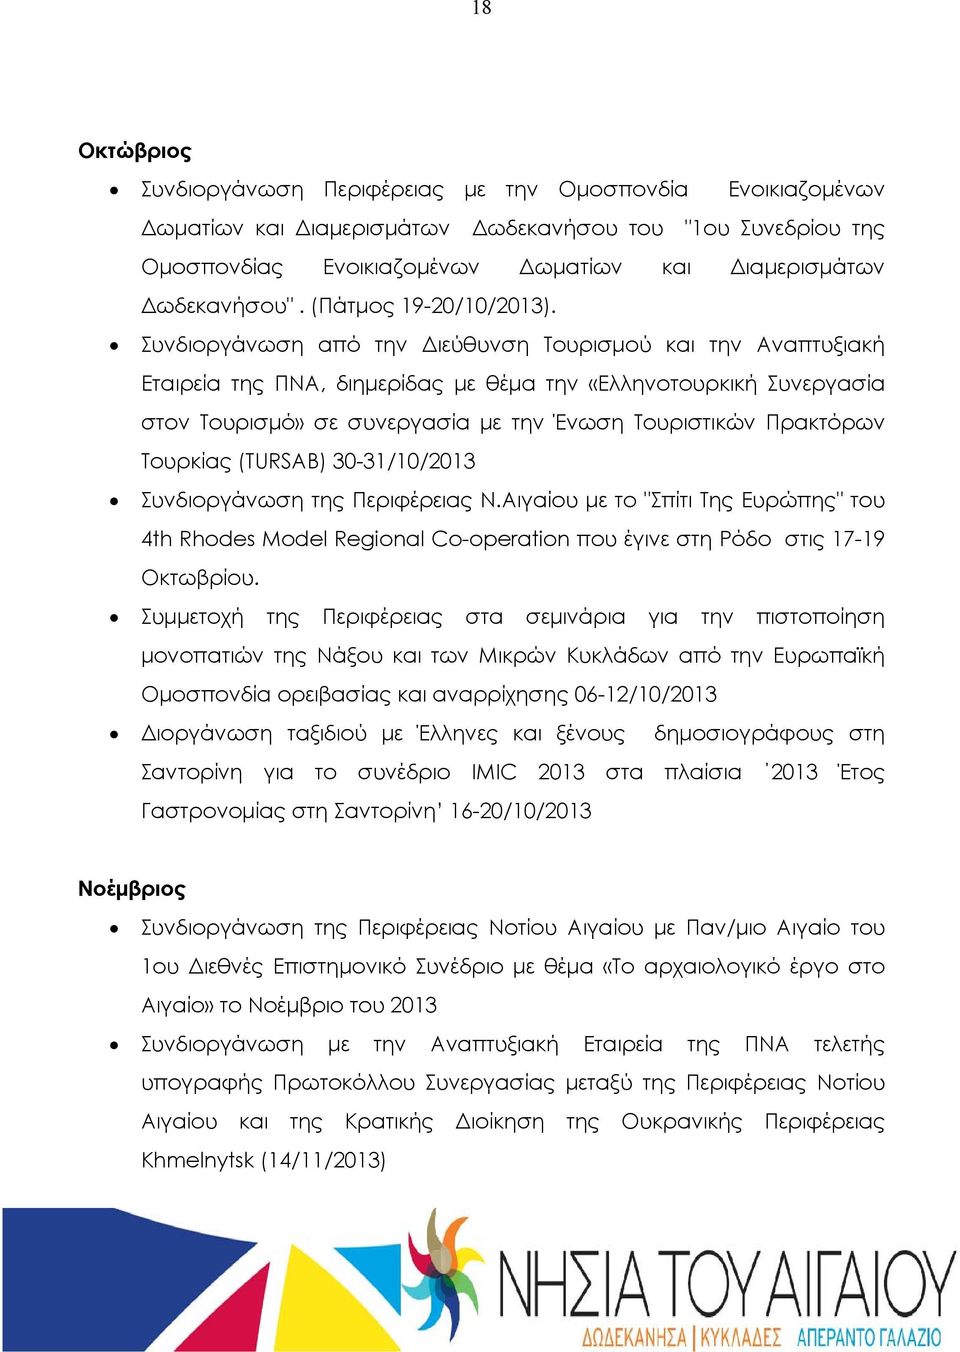 Συνδιοργάνωση από την Διεύθυνση Τουρισμού και την Αναπτυξιακή Εταιρεία της ΠΝΑ, διημερίδας με θέμα την «Ελληνοτουρκική Συνεργασία στον Τουρισμό» σε συνεργασία με την Ένωση Τουριστικών Πρακτόρων